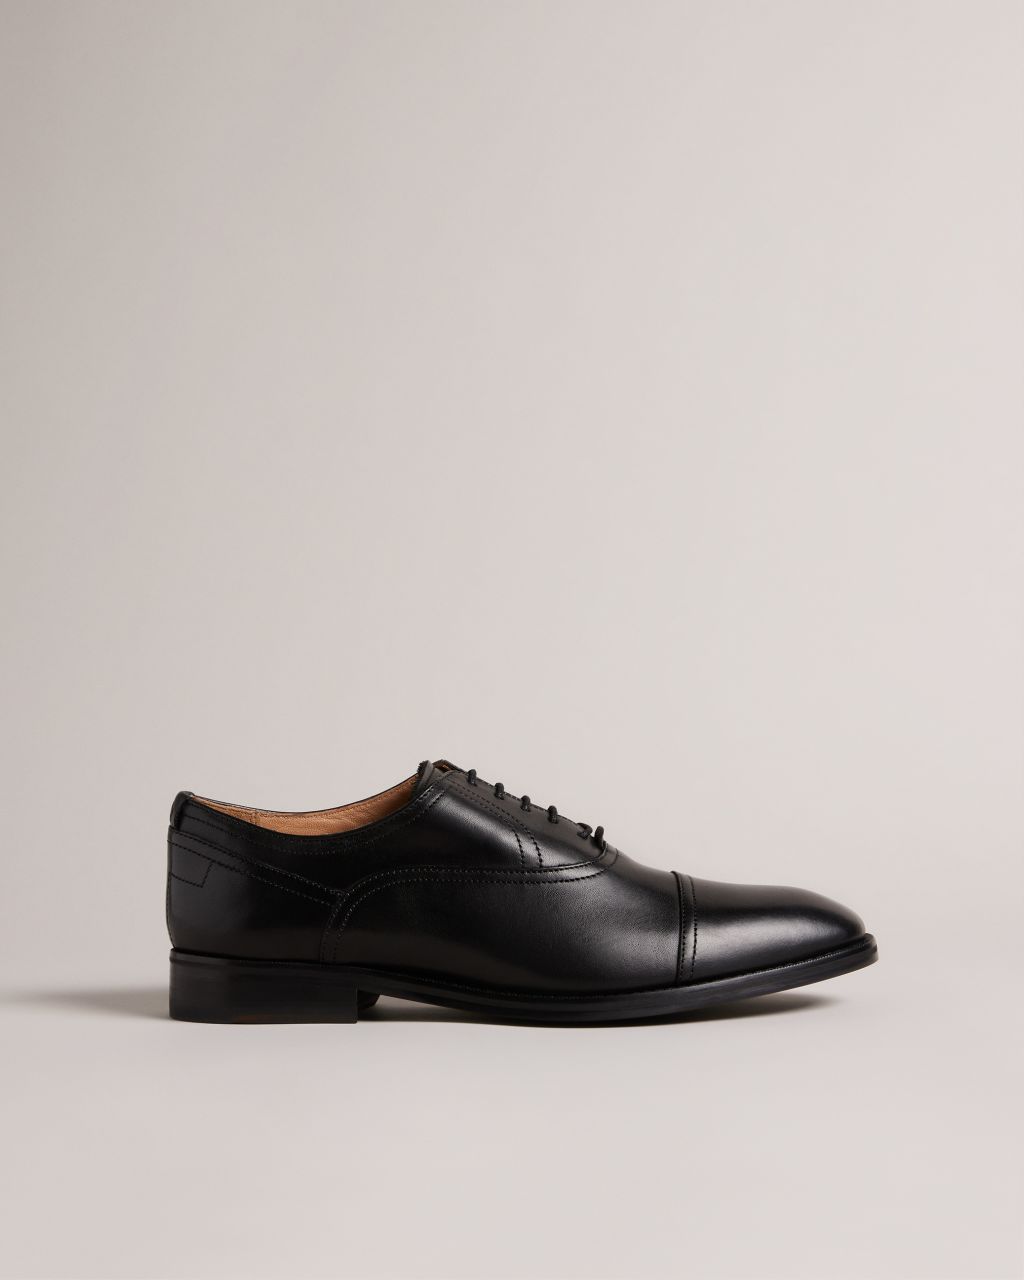 Ted Baker Men's Formal Leather Oxford Shoes In Black, Carlen